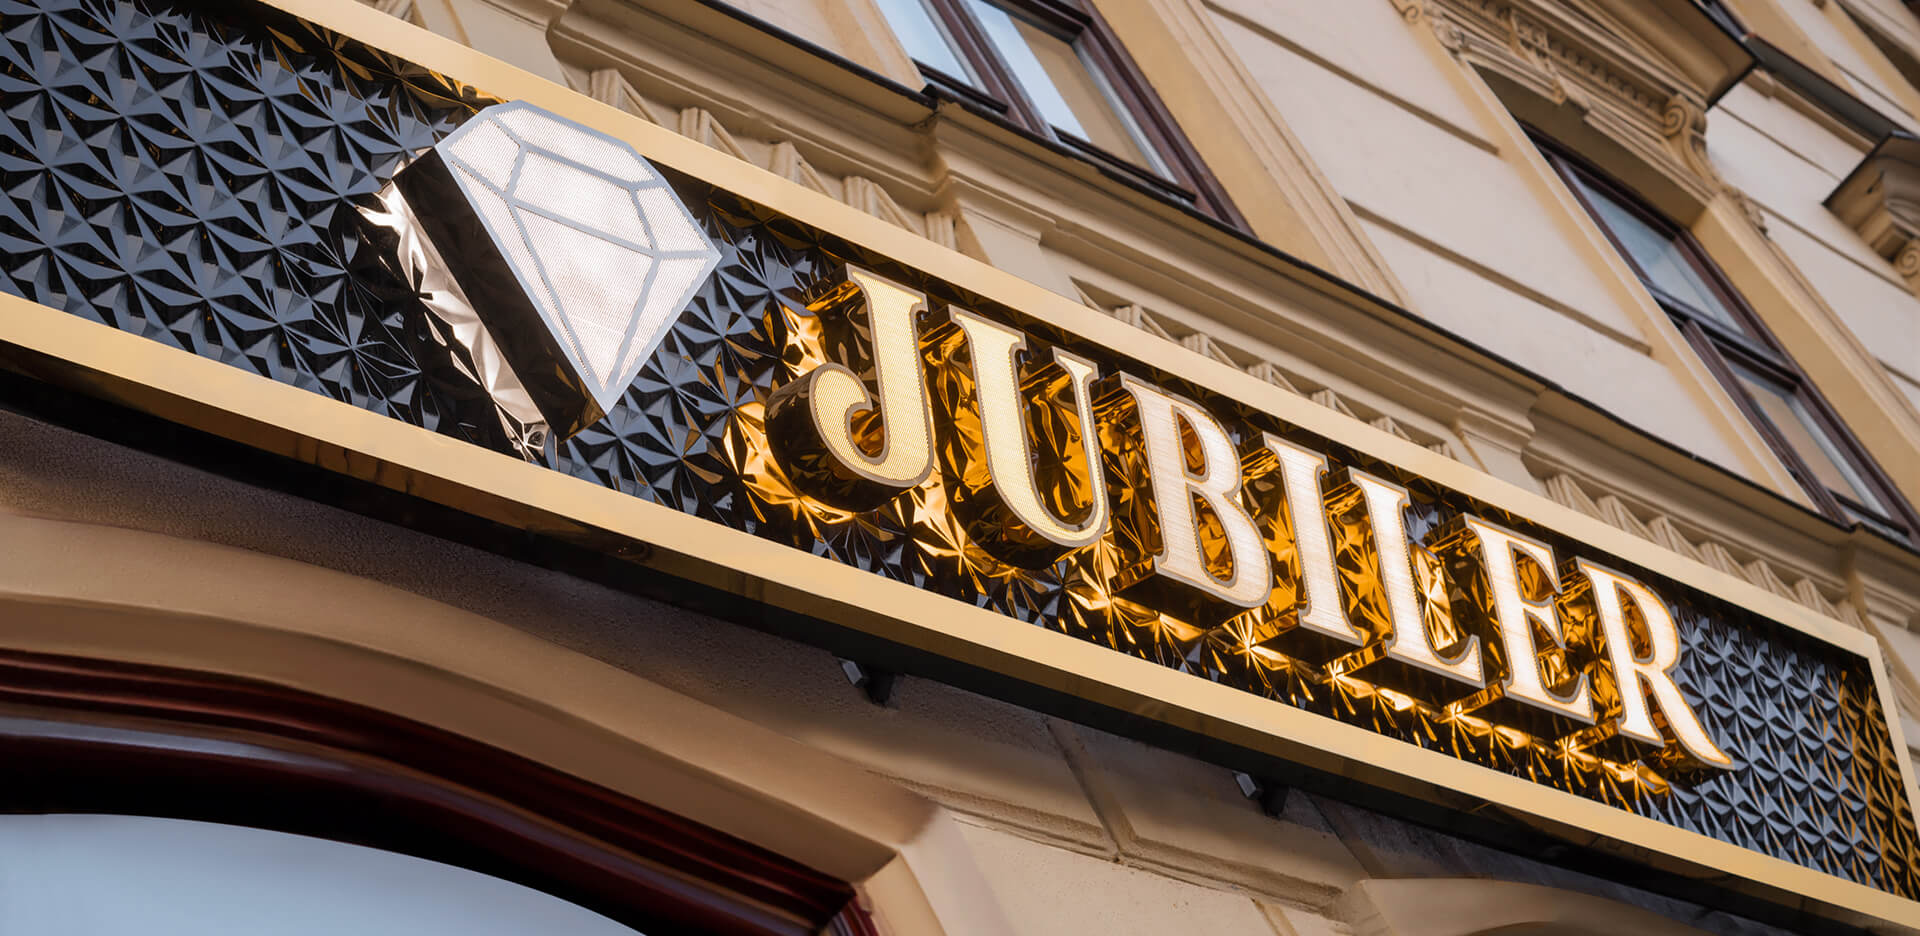 Jubiler - Szyld dla Jubilera, wykonany z blachy nierdzewnej perforowanej w kolorze złotym wraz z logo